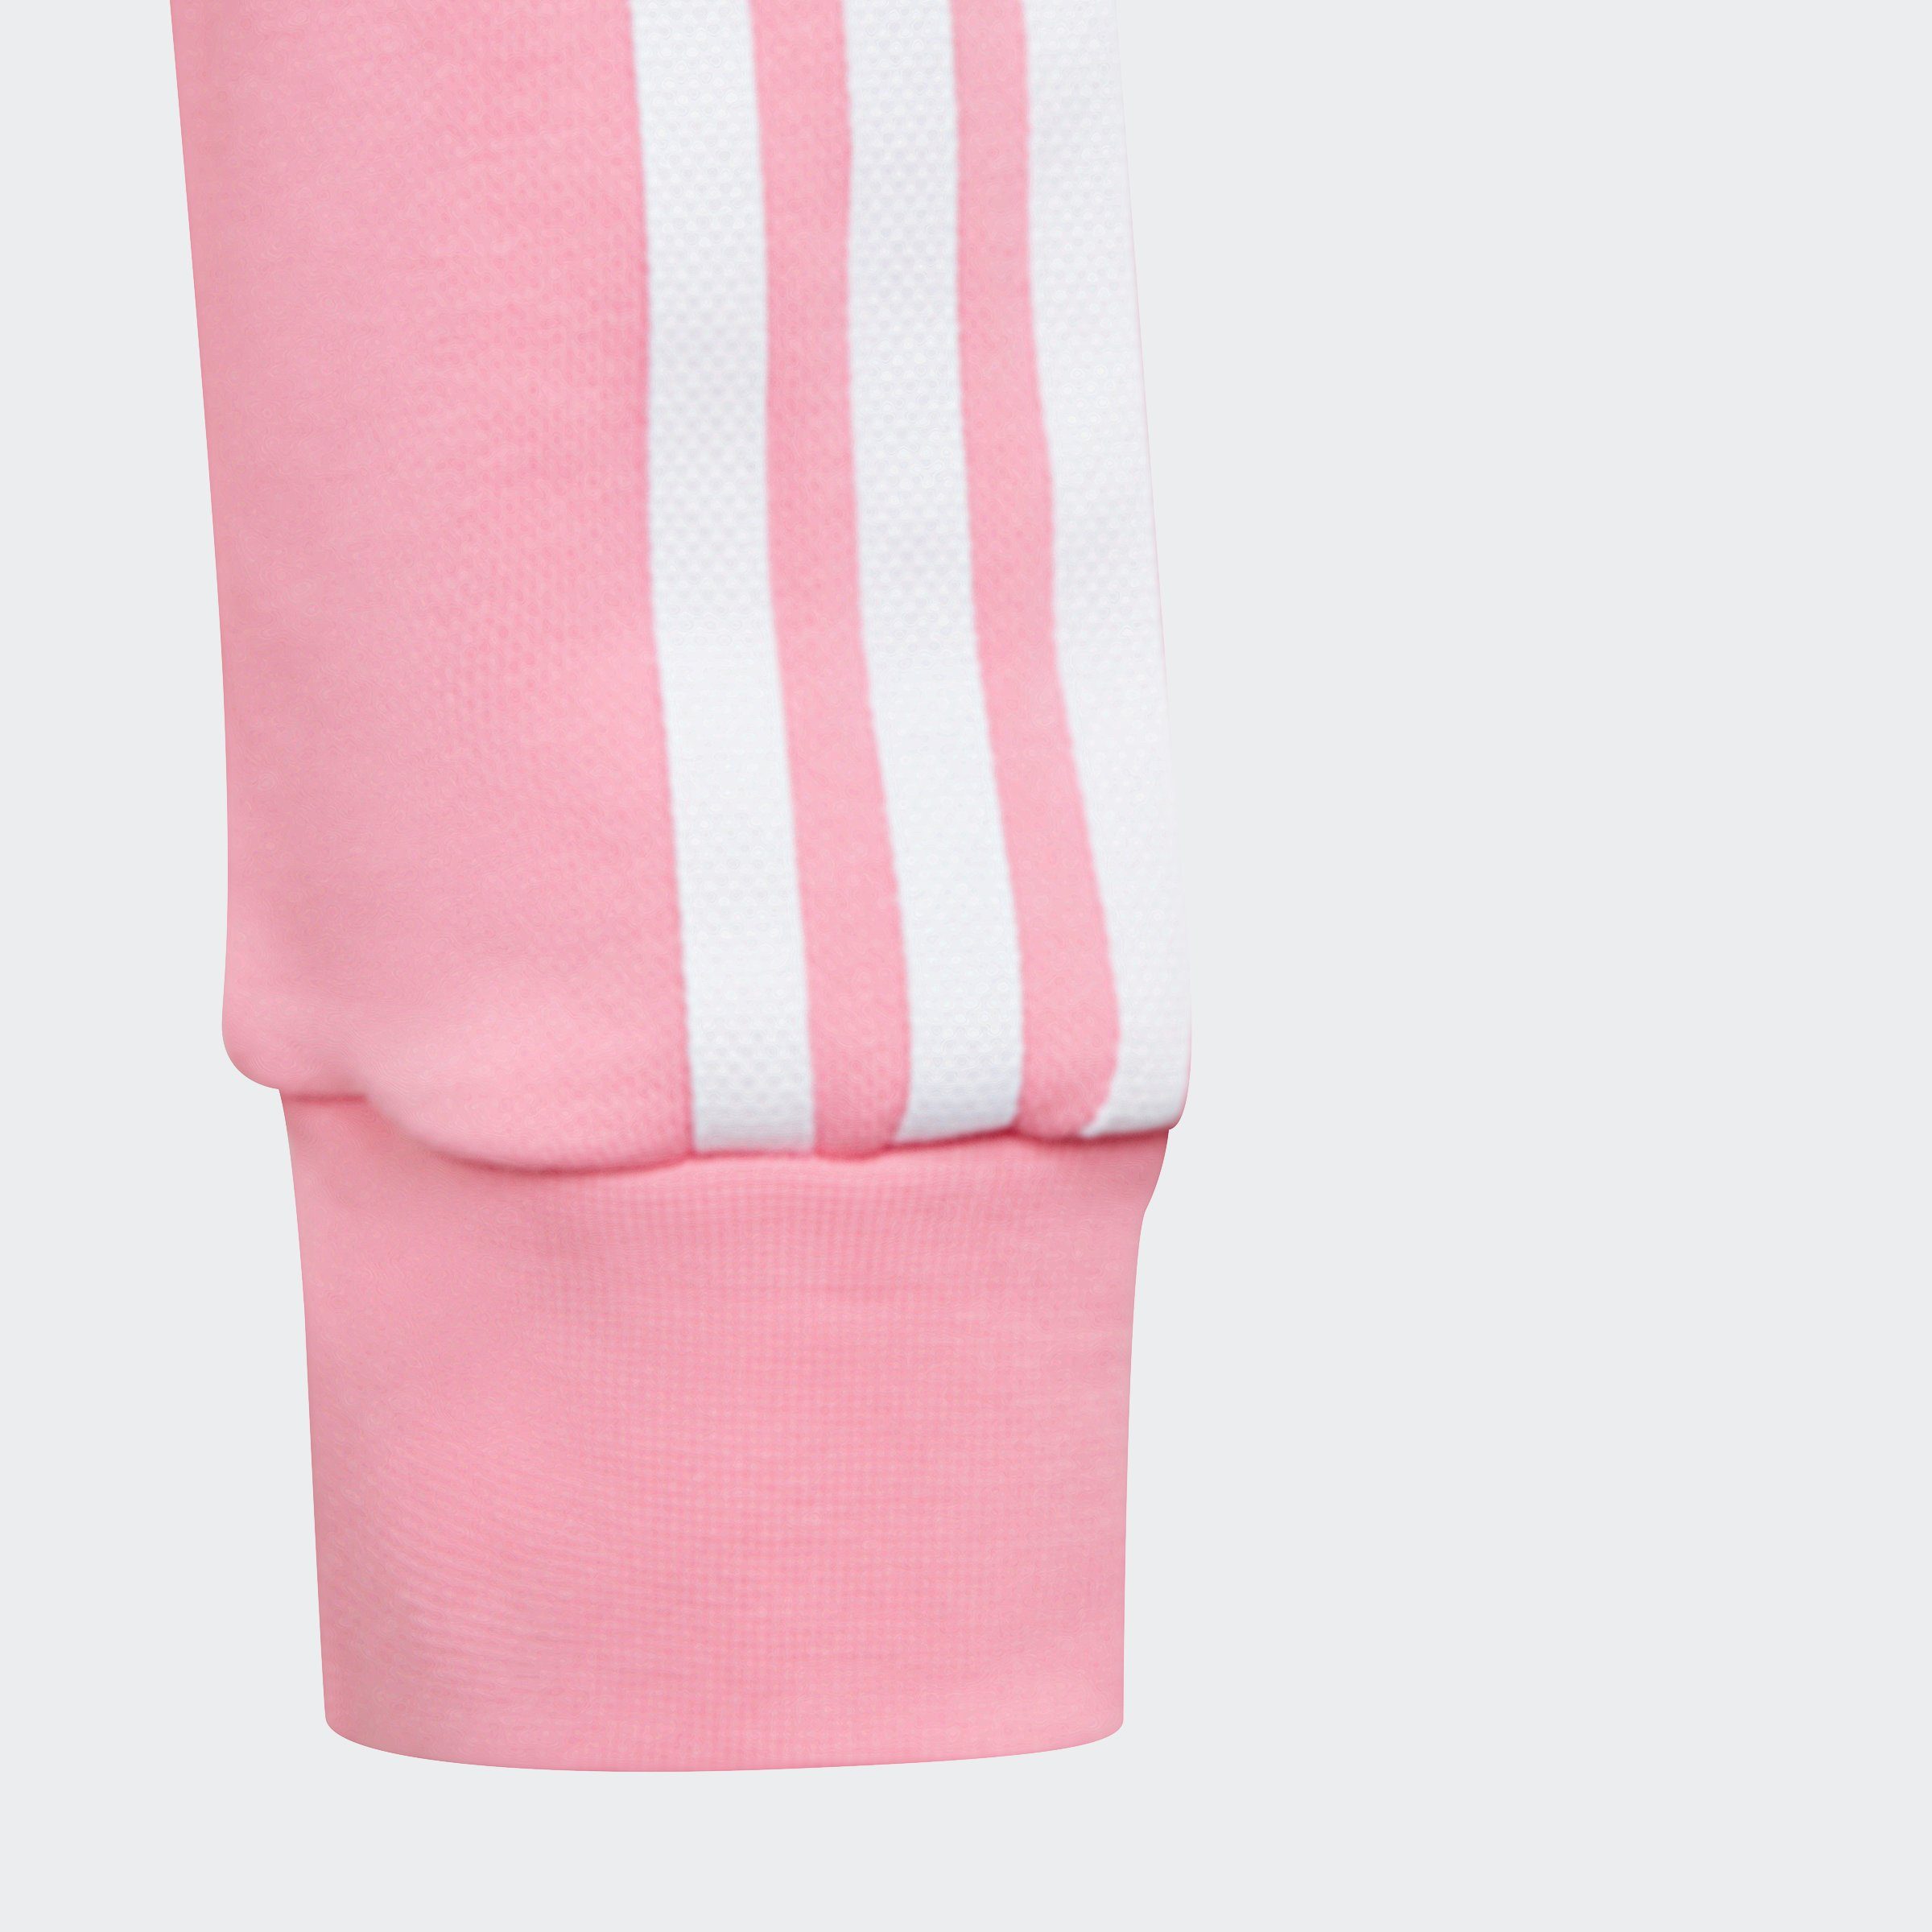 adidas Originals CROPPED Sweatshirt Bliss Pink HOODIE ADICOLOR